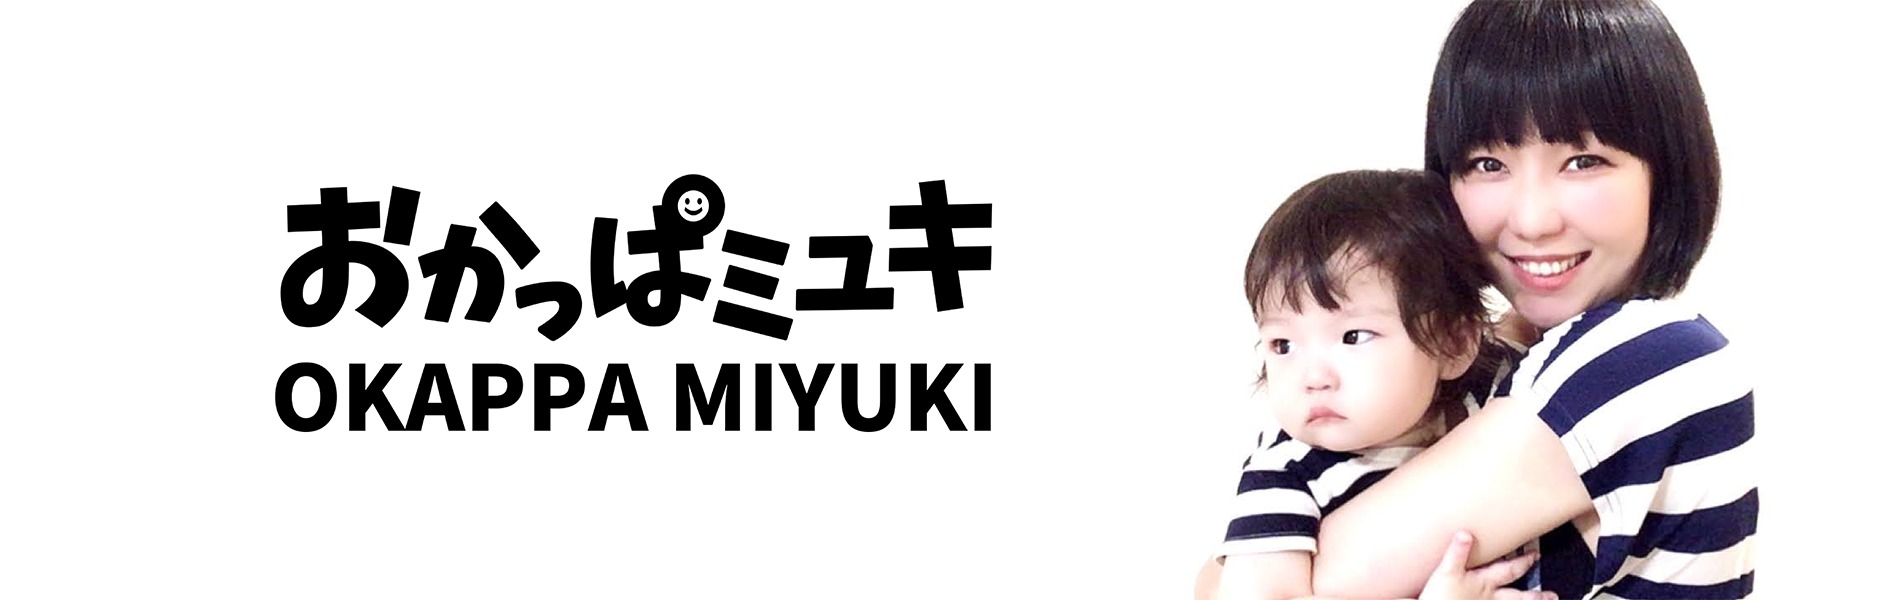 おかっぱミユキの公式サイトのトップ画像。娘の「まんじゅう」を抱っこしながら微笑んでいる写真。